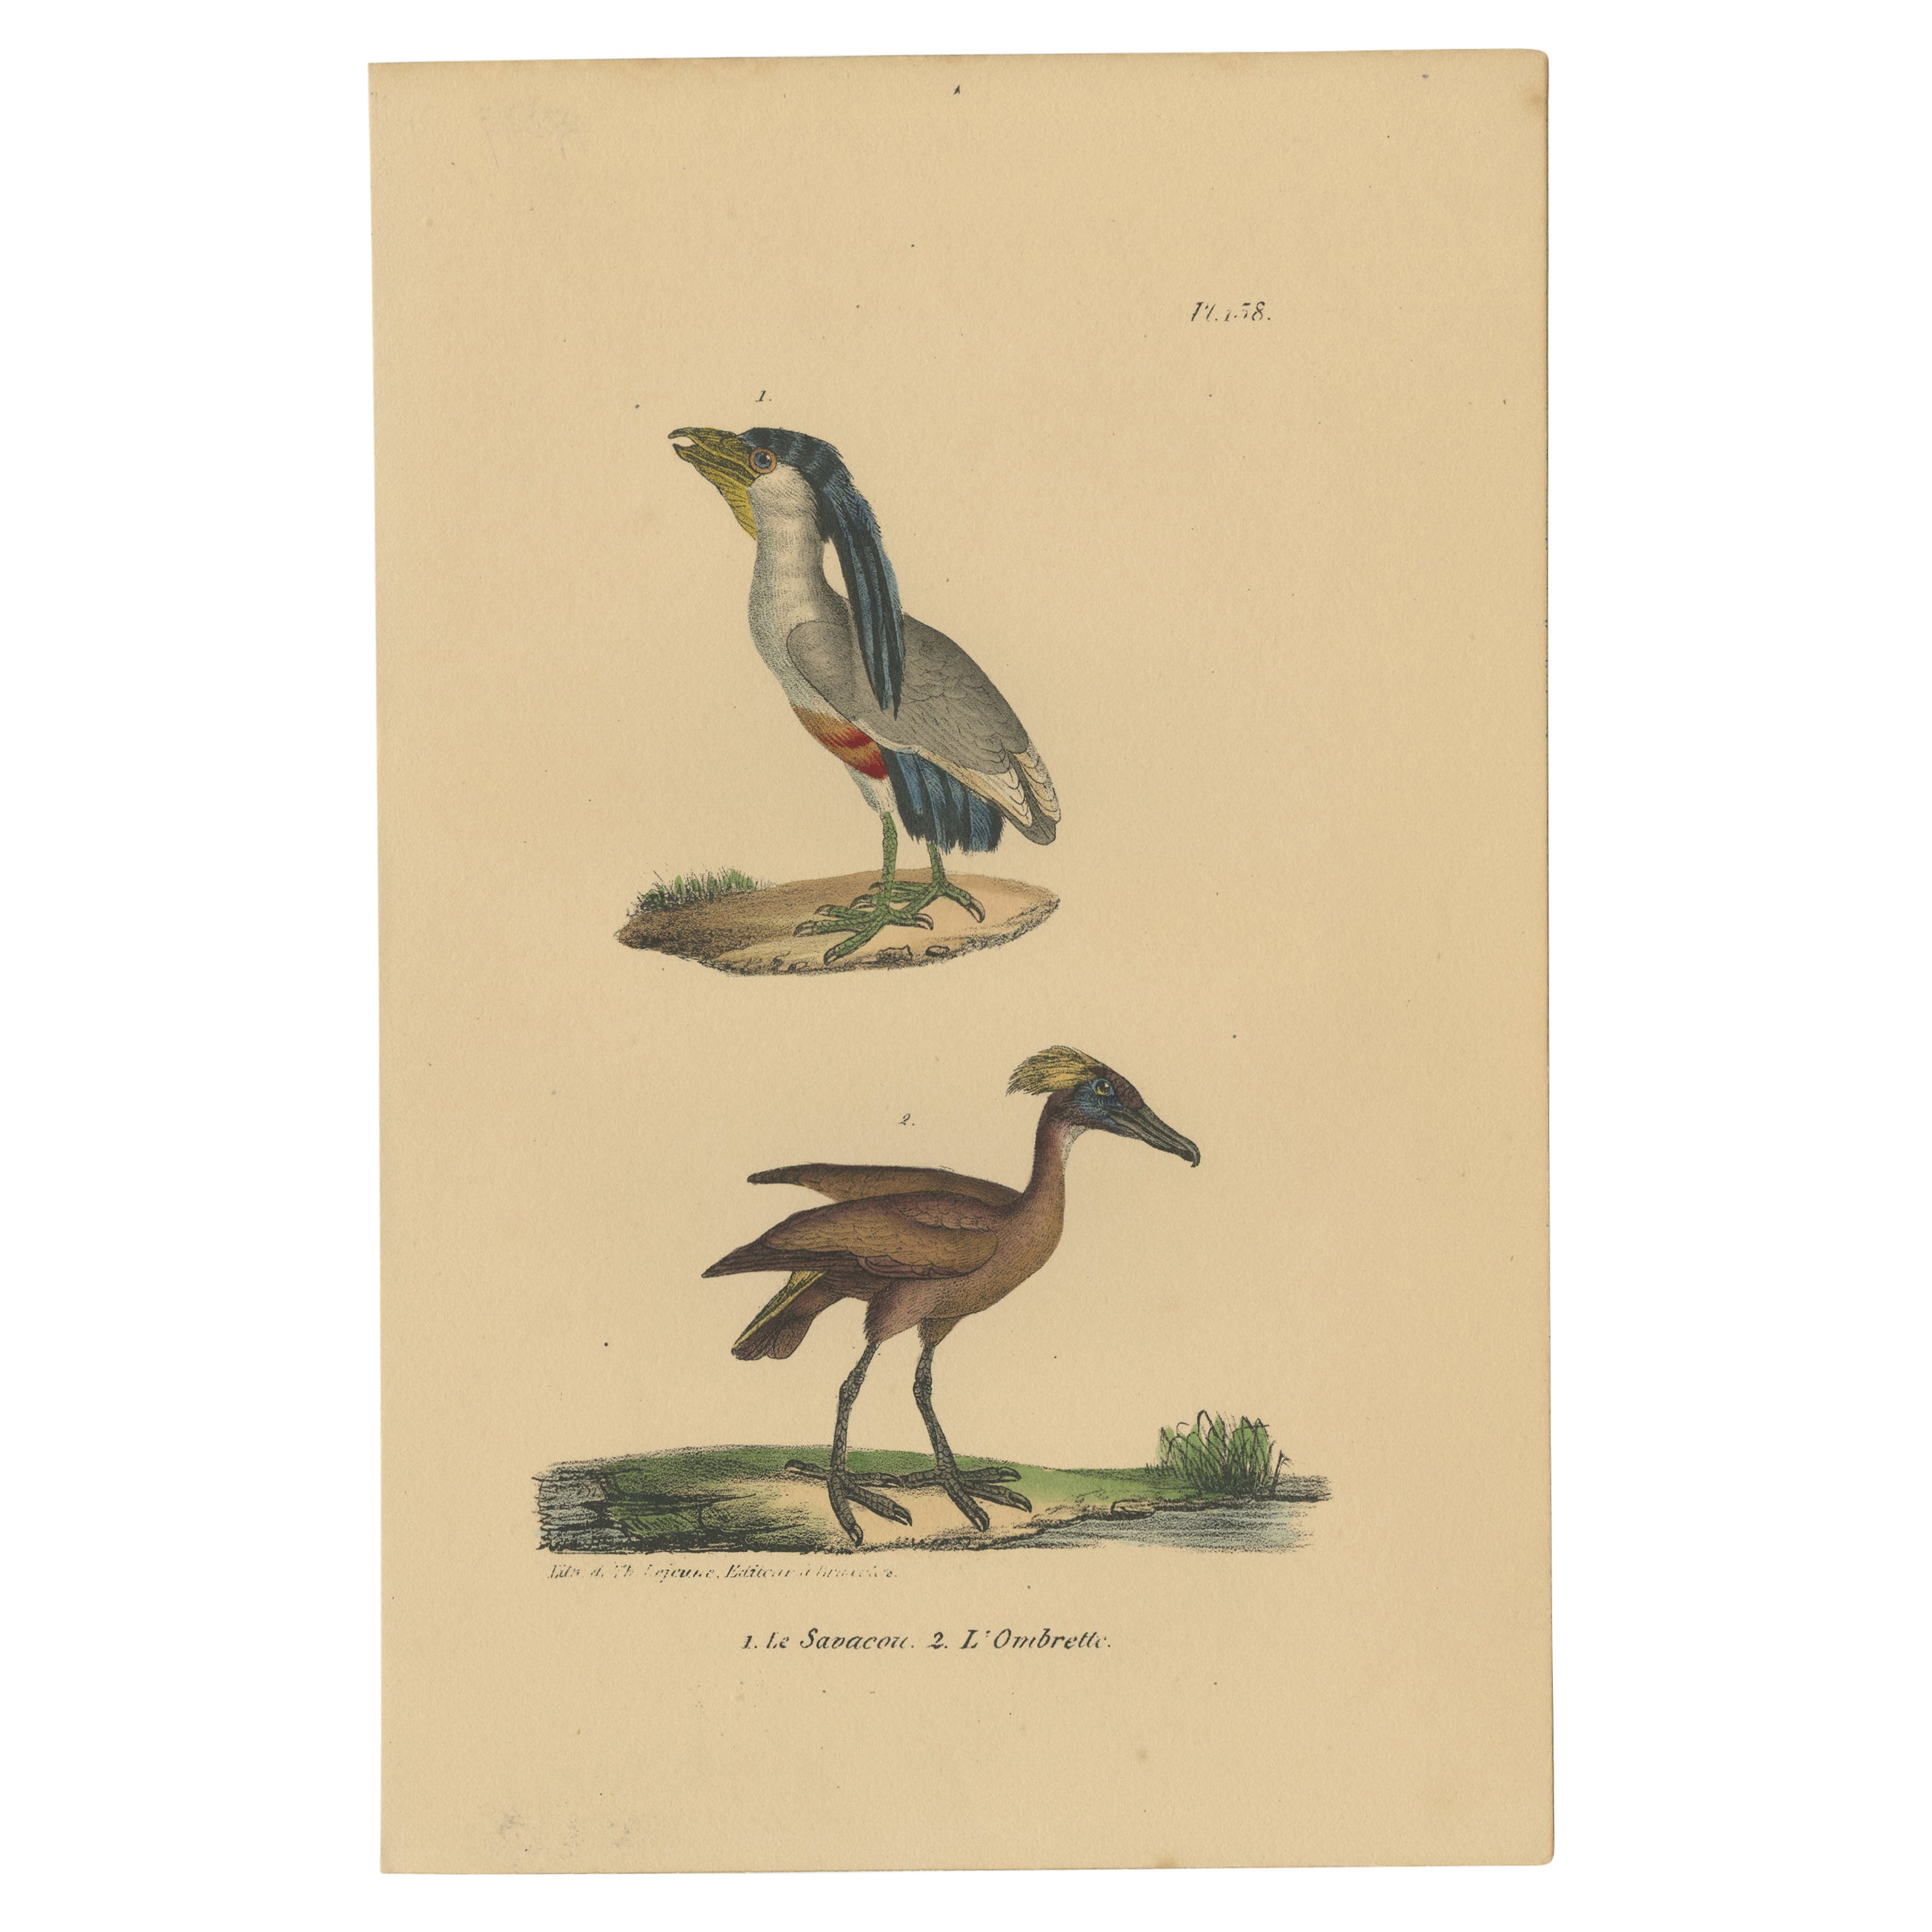 Impression oiseau ancienne Pl. 158 d'un héron et d'un Hamerkop piqués dans un bateau par Lejeune, vers 1830